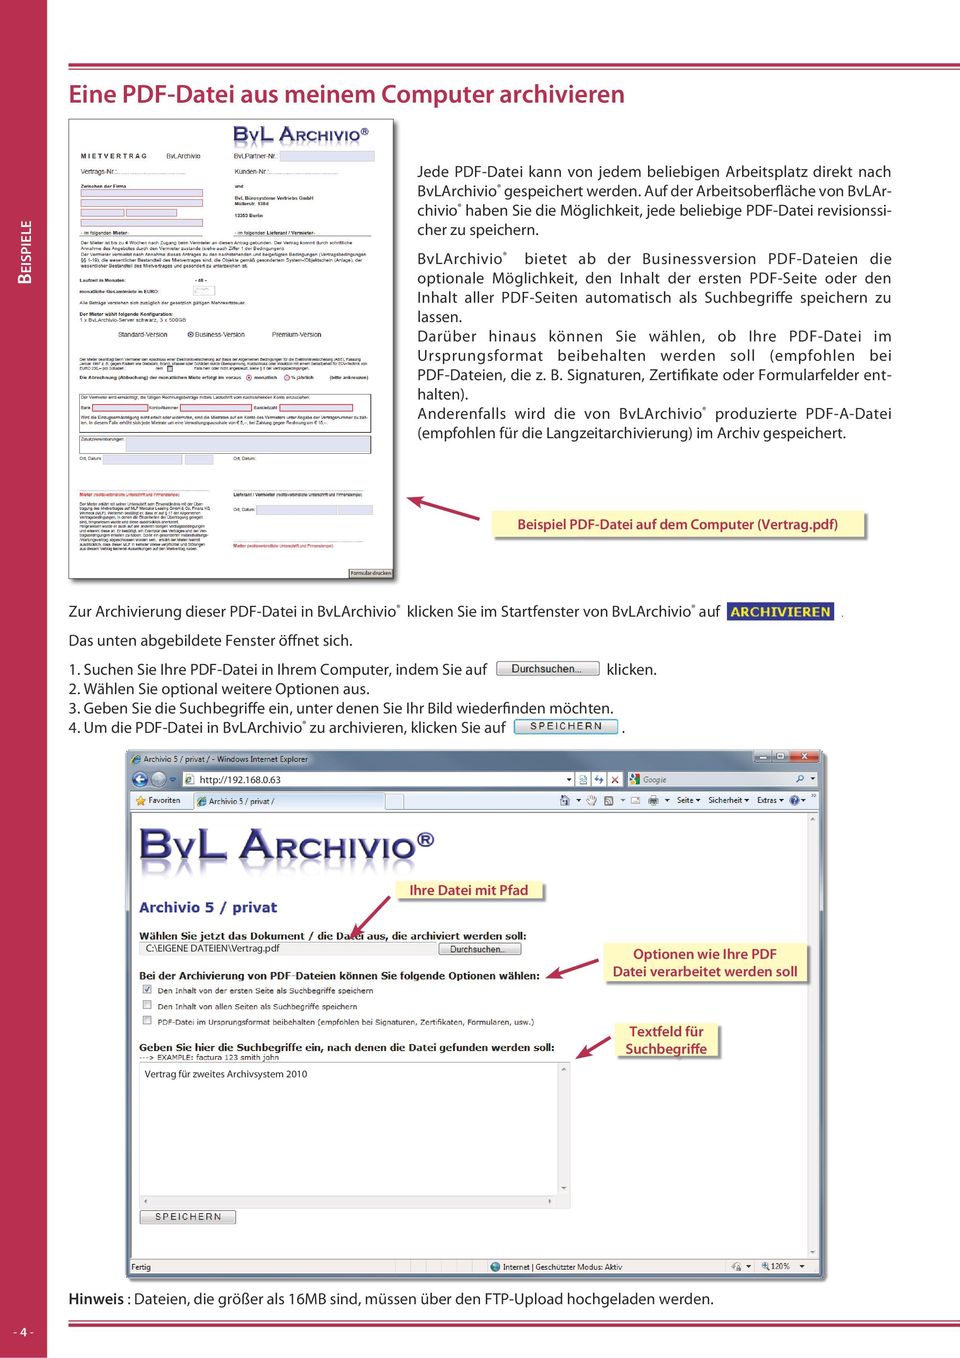 BvLArchivio bietet ab der Businessversion PDF-Dateien die optionale Möglichkeit, den Inhalt der ersten PDF-Seite oder den Inhalt aller PDF-Seiten automatisch als Suchbegriffe speichern zu lassen.